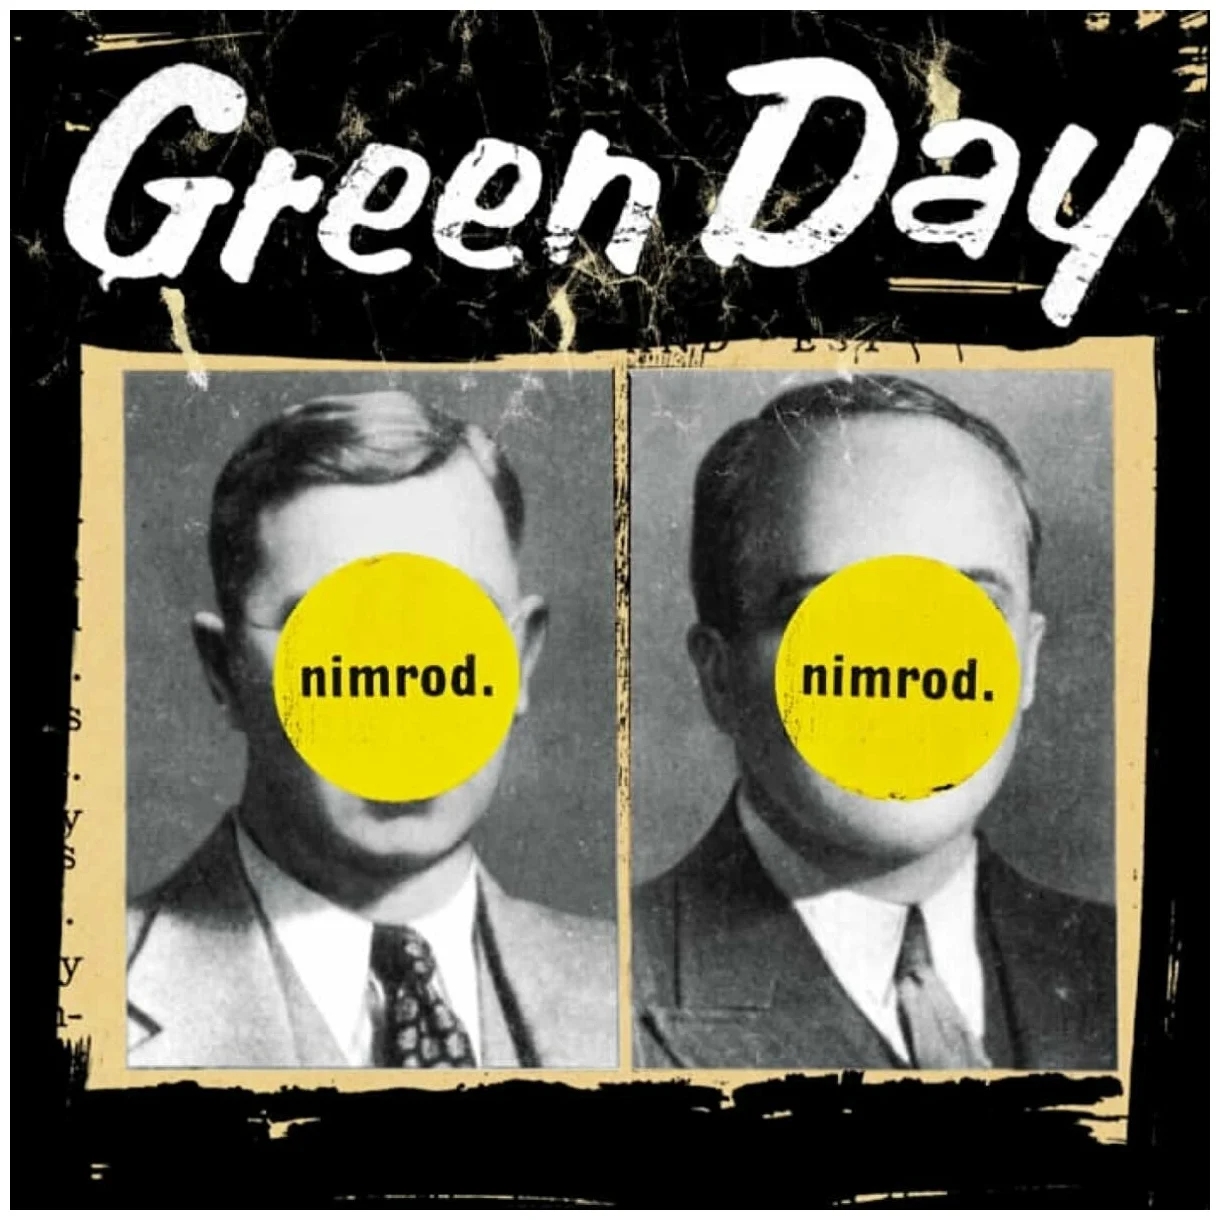 Виниловая Пластинка Green Day, Nimrod (0093624873006) виниловая пластинка prince welcome 2 america limited edition box set 2lp cd blu ray